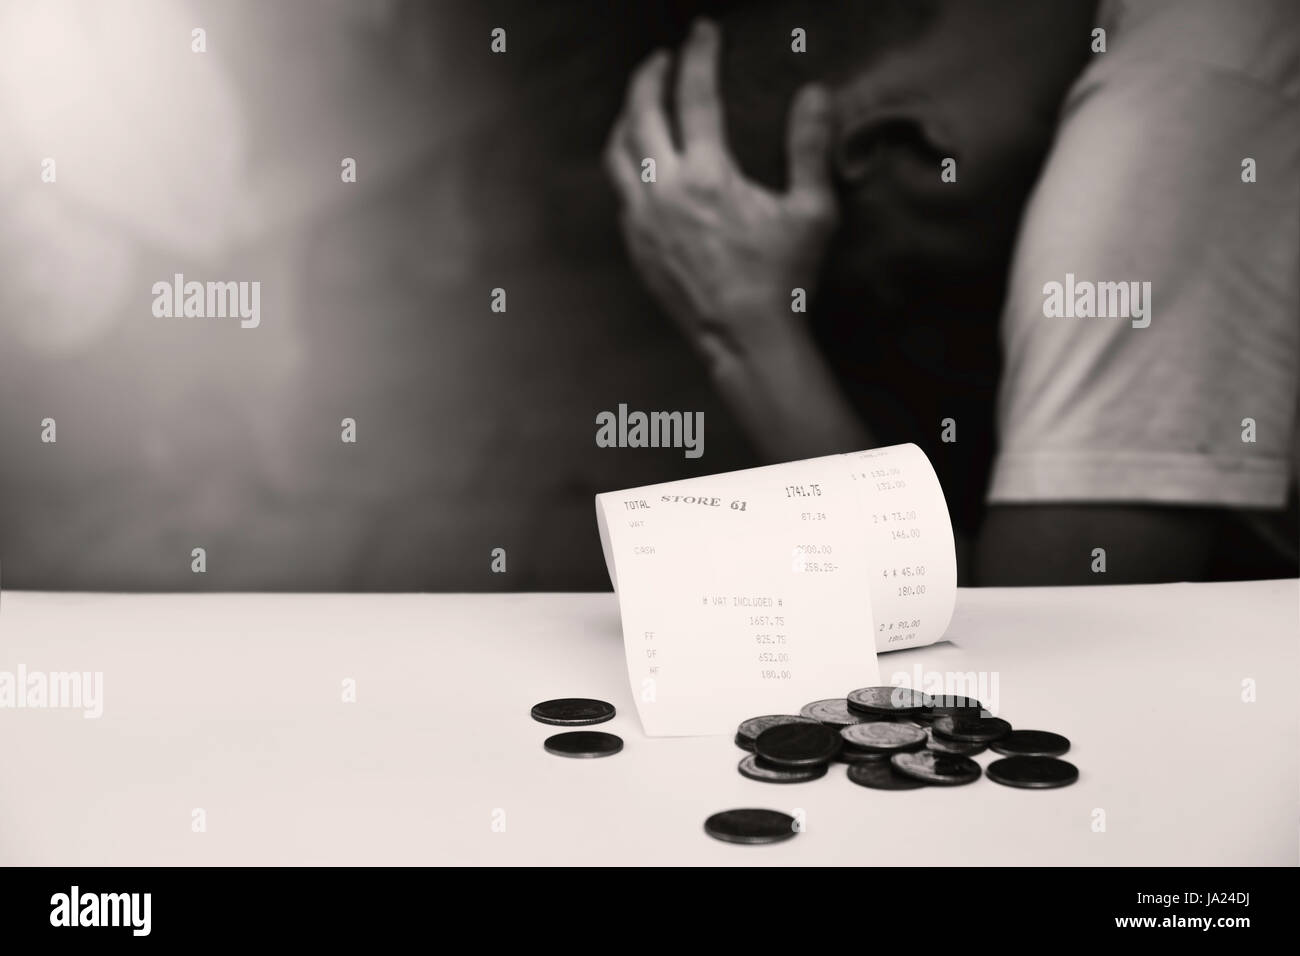 Quittung Rechnung, Geld Bargeld. Papierrechnung und Münzen mit man Kopfschmerzen auf Hintergrund schwarz und weiß Stil. Stockfoto